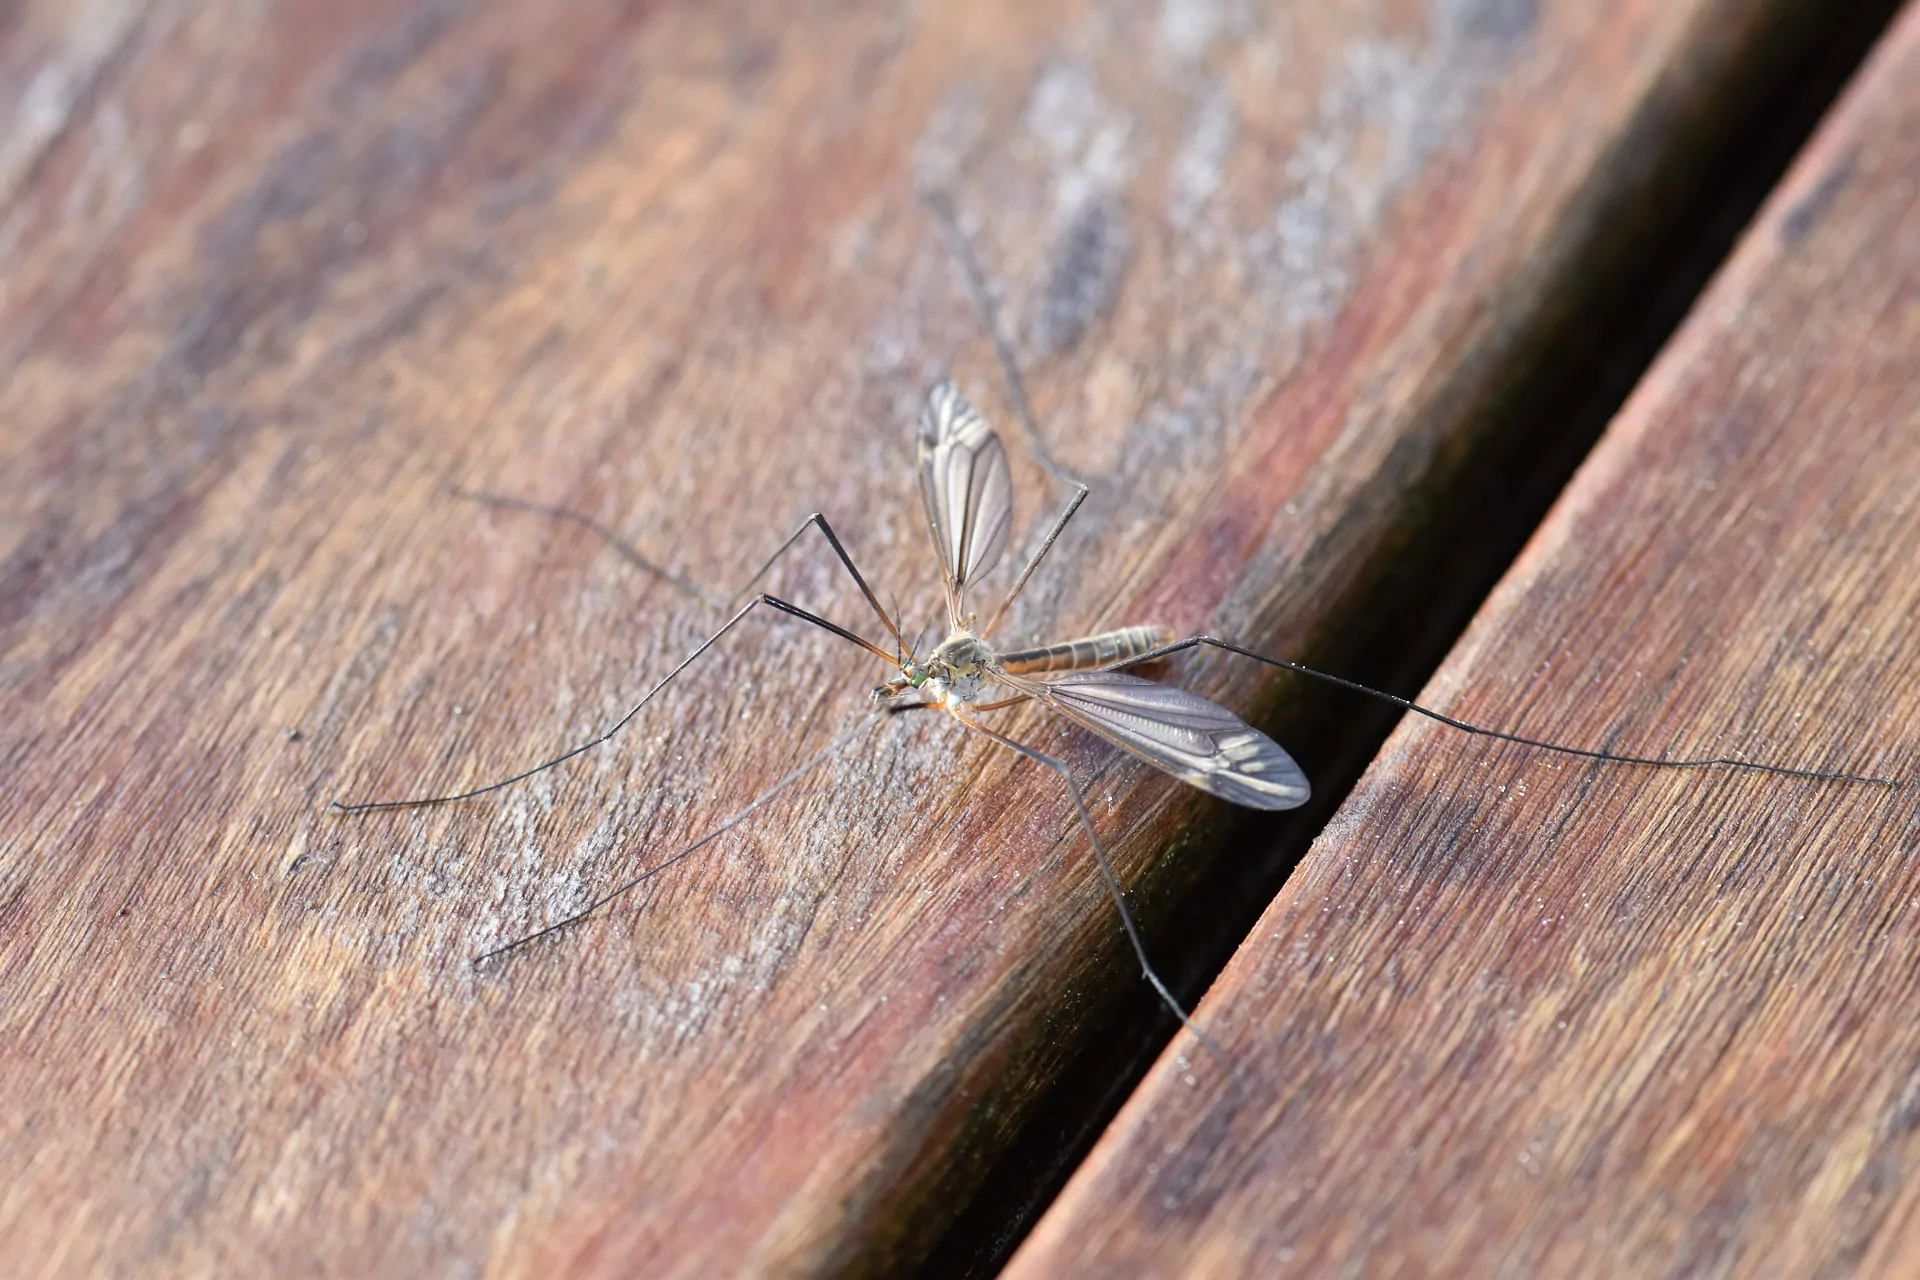 Zanzare in casa a novembre: come allontanarle senza l’uso dei pesticidi chimici